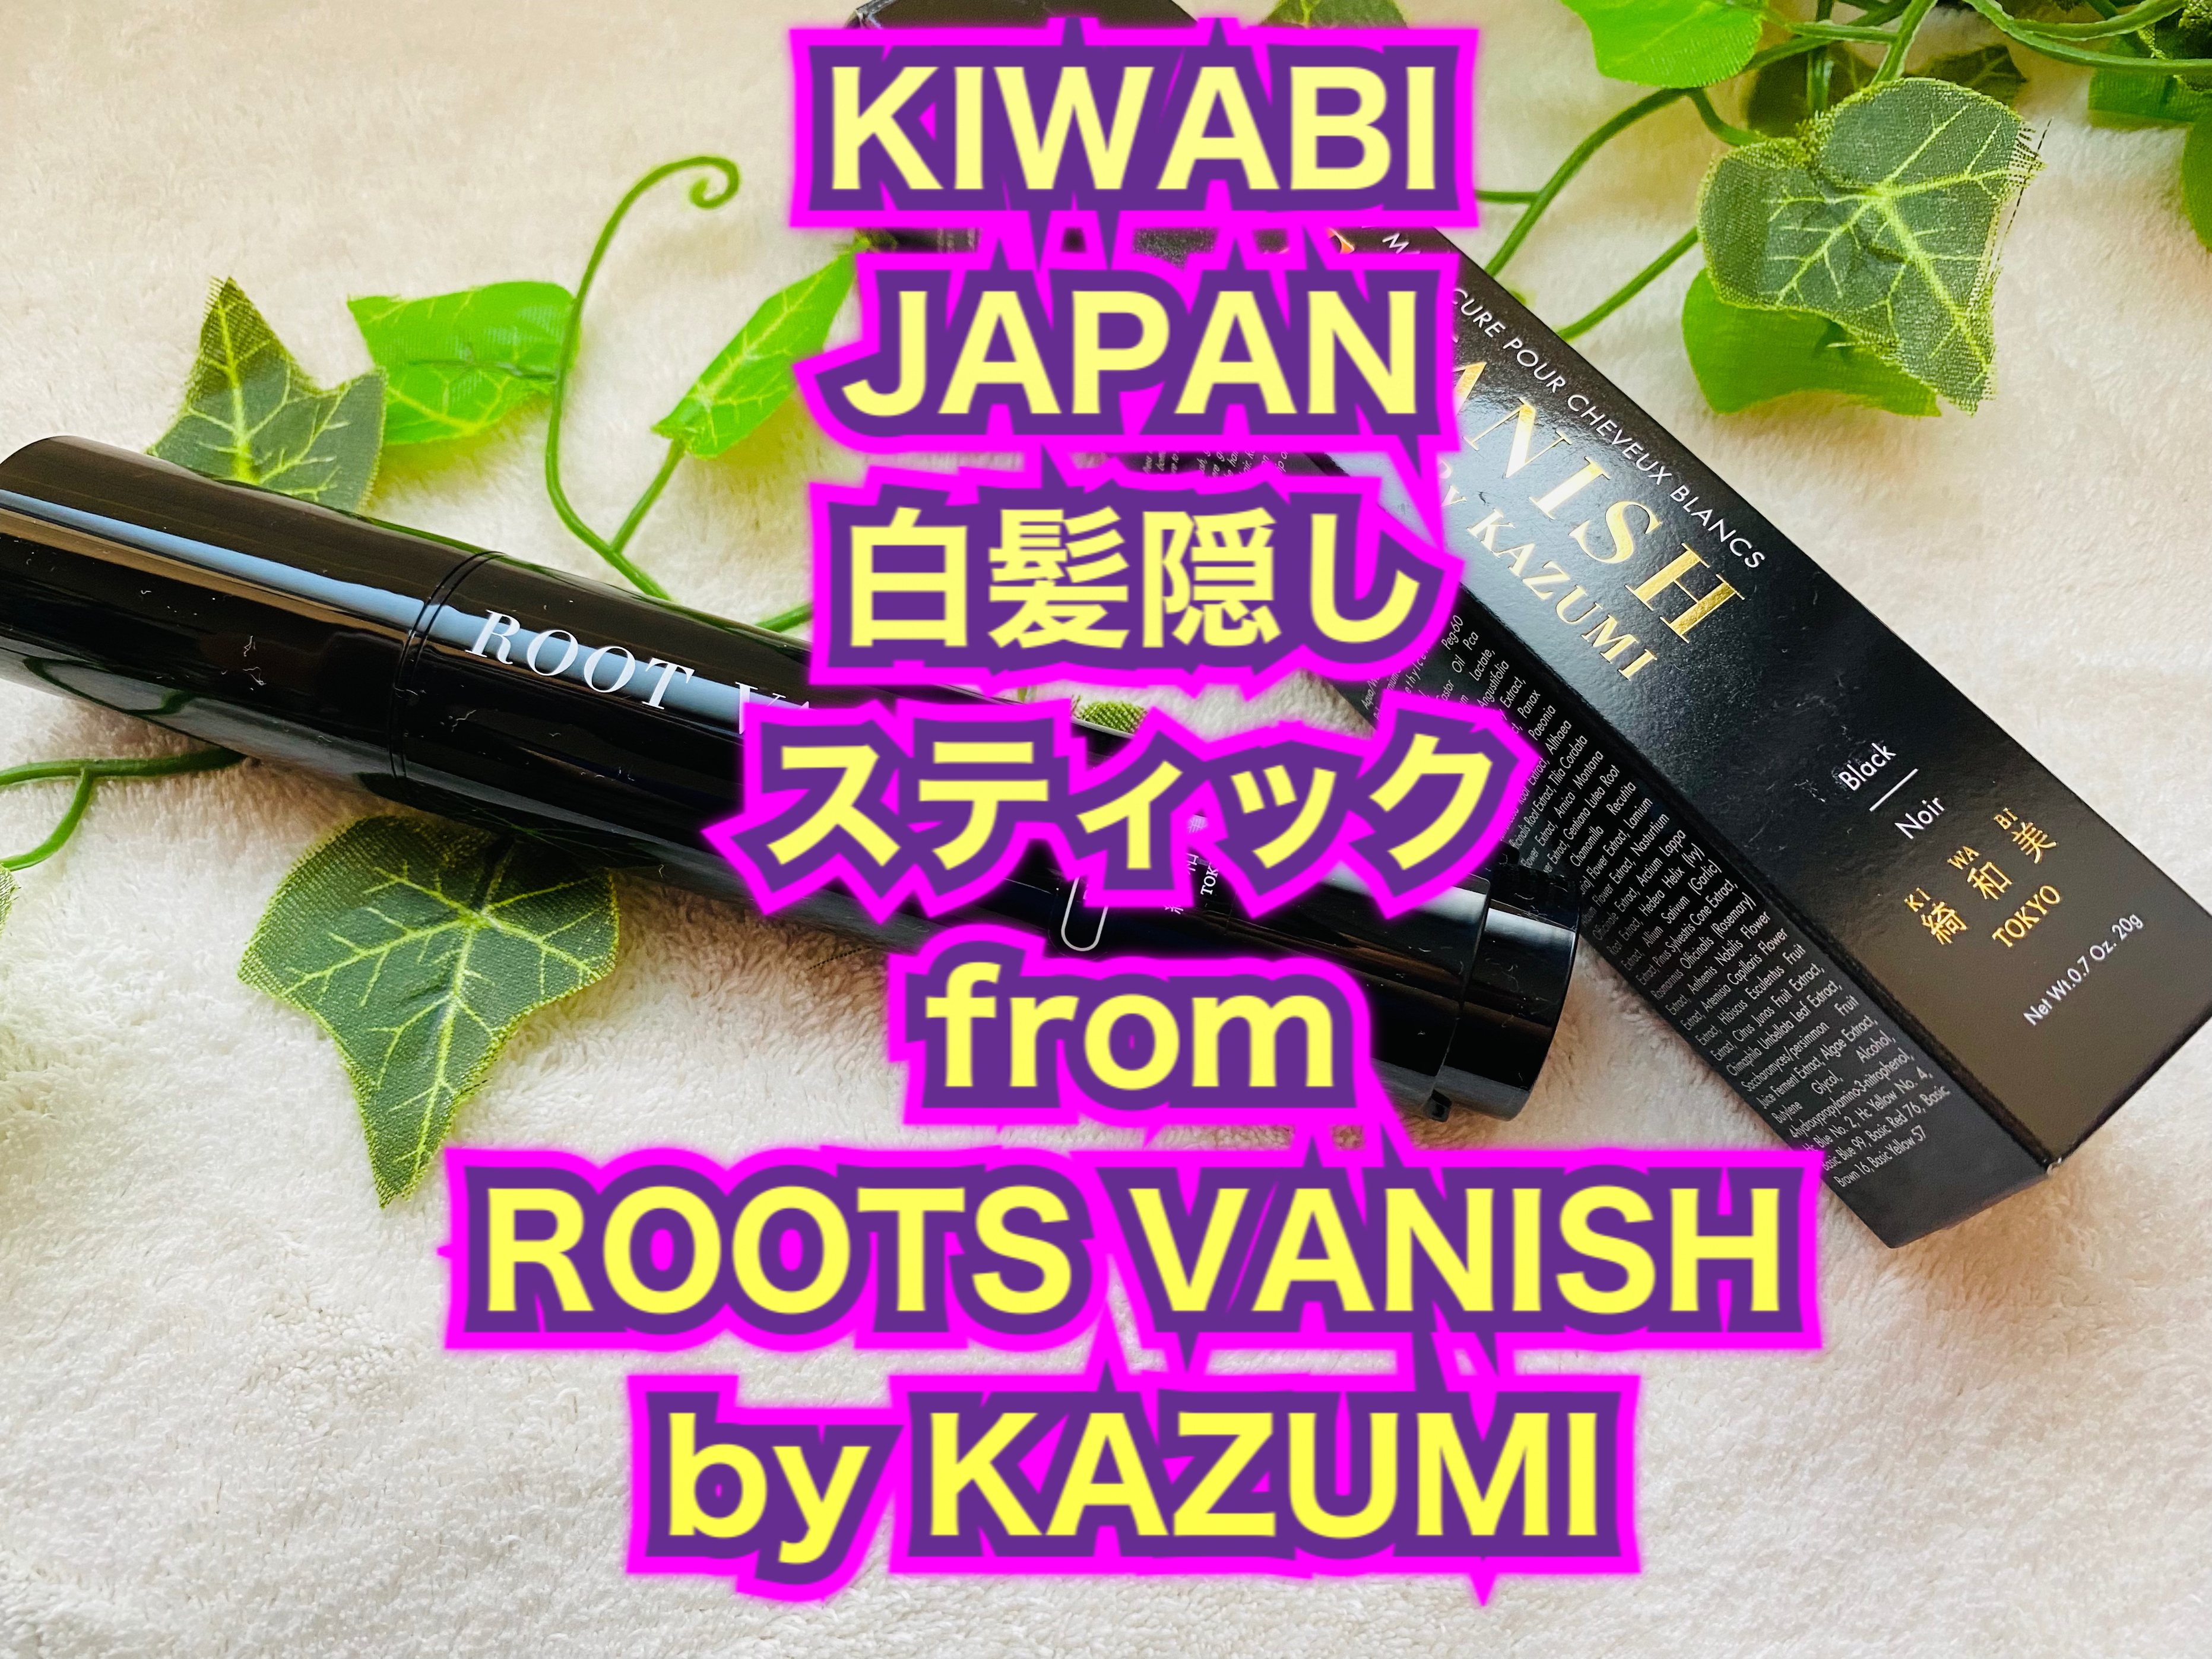 綺和美(KIWABI) ROOT VANISH By KAZUMI 白髪隠しカラーリングブラシを使ったマイピコブーさんのクチコミ画像5